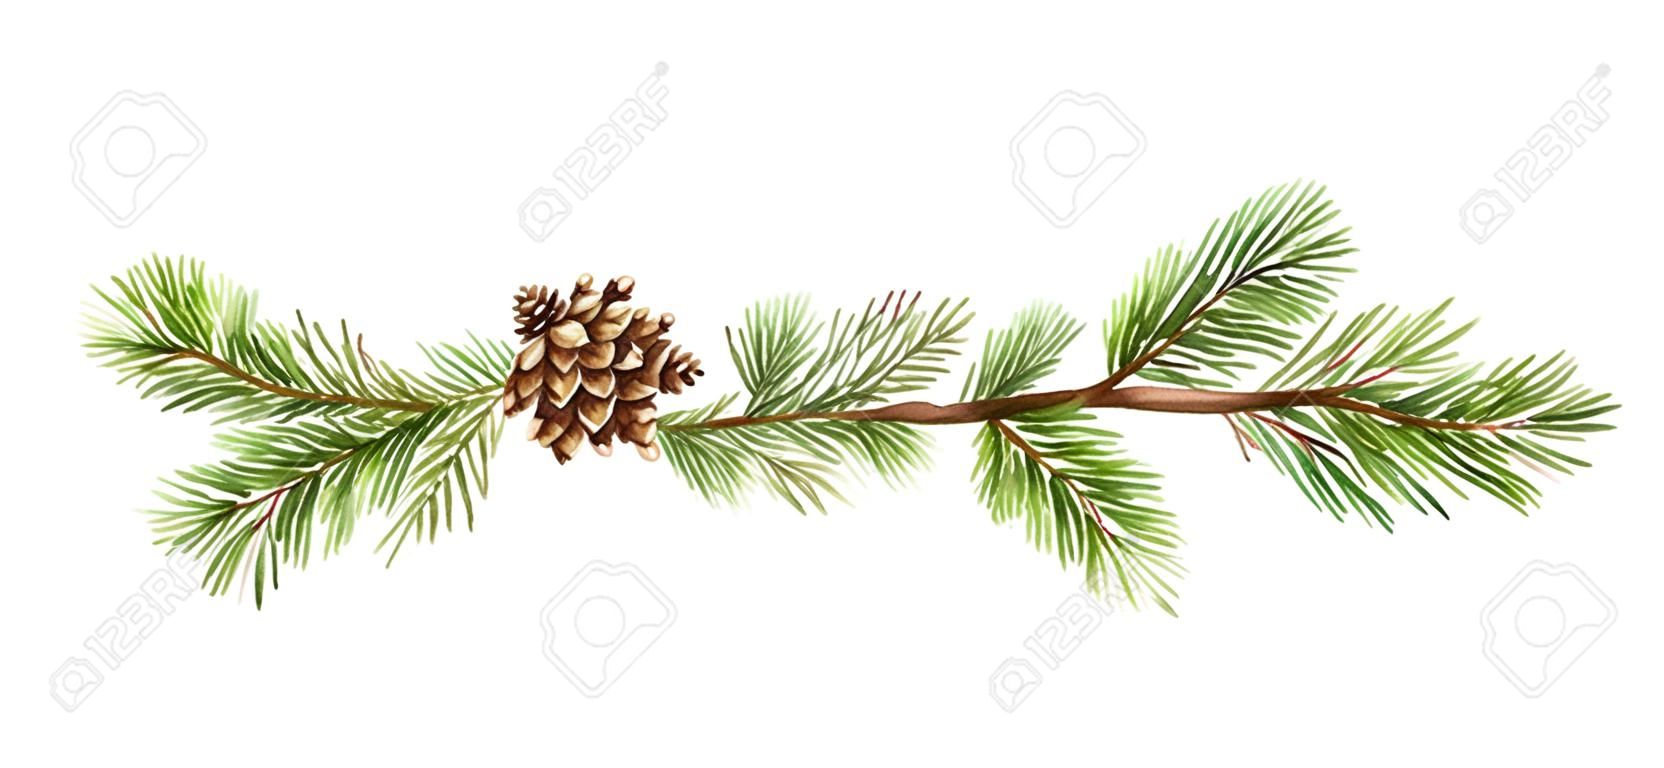 Bandeira do Natal do vetor da aquarela com ramos do abeto e lugar para o texto. Ilustração para cartões e convites isolados no fundo branco.